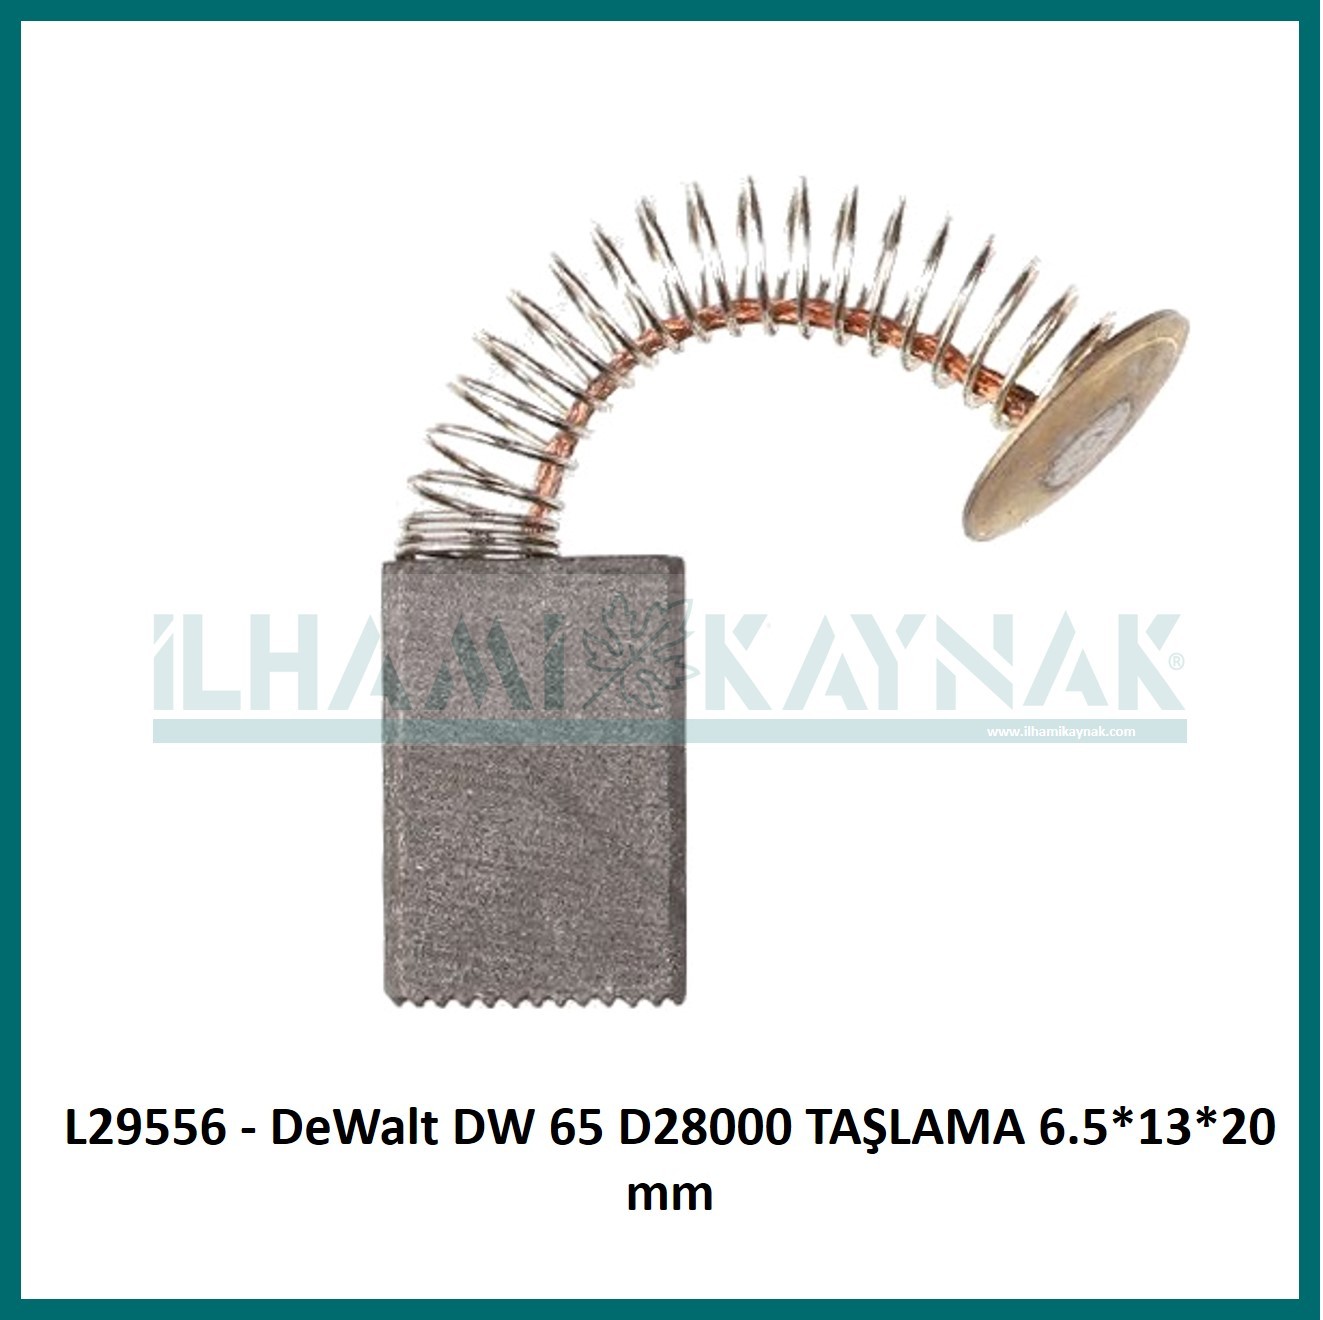 L29556 - DeWalt DW 65 D28000 TAŞLAMA 6.5*13*20 mm - 100 Adet